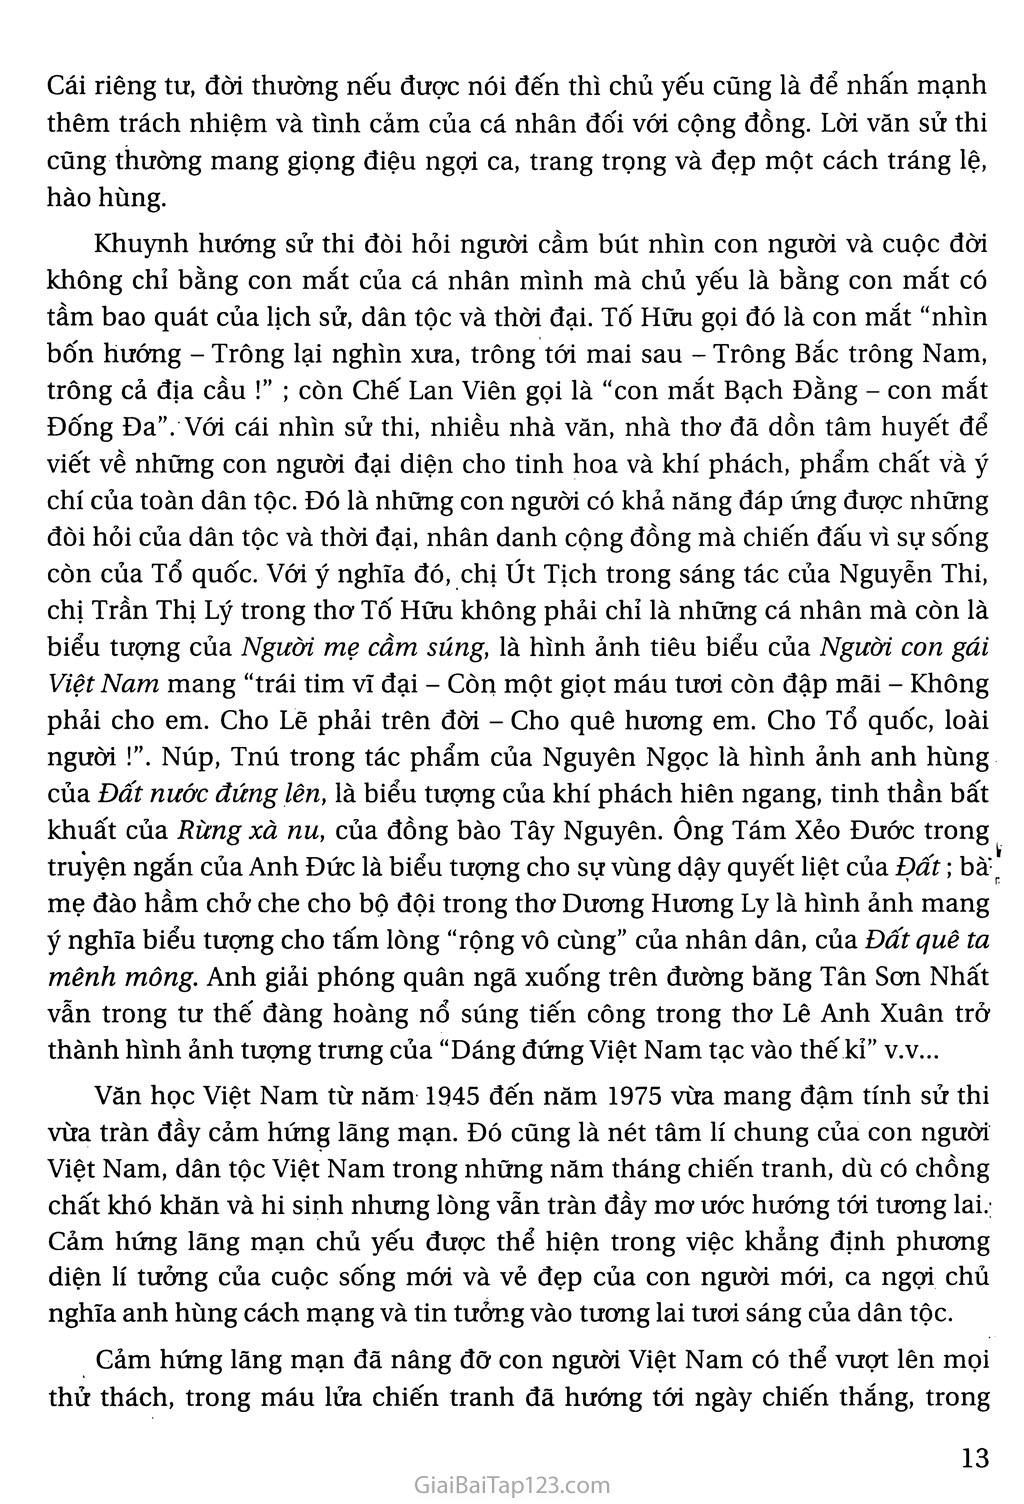 Khái quát văn học Việt Nam từ cách mạng tháng tám năm 1945 đến hết thế kỉ XX trang 11